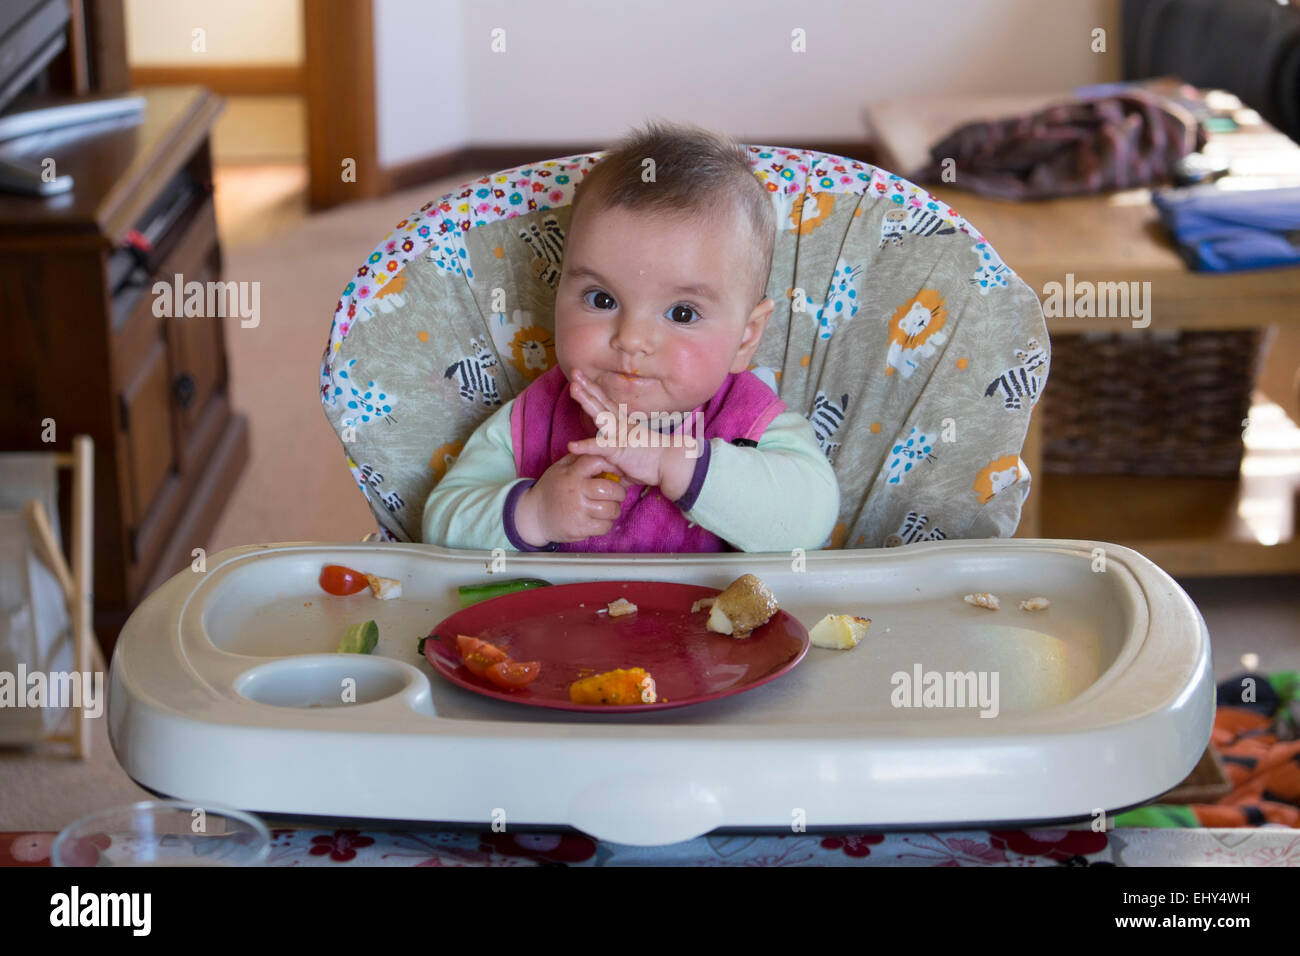 8 Monate altes Babymädchen Essen im Hochstuhl Stockfotografie - Alamy